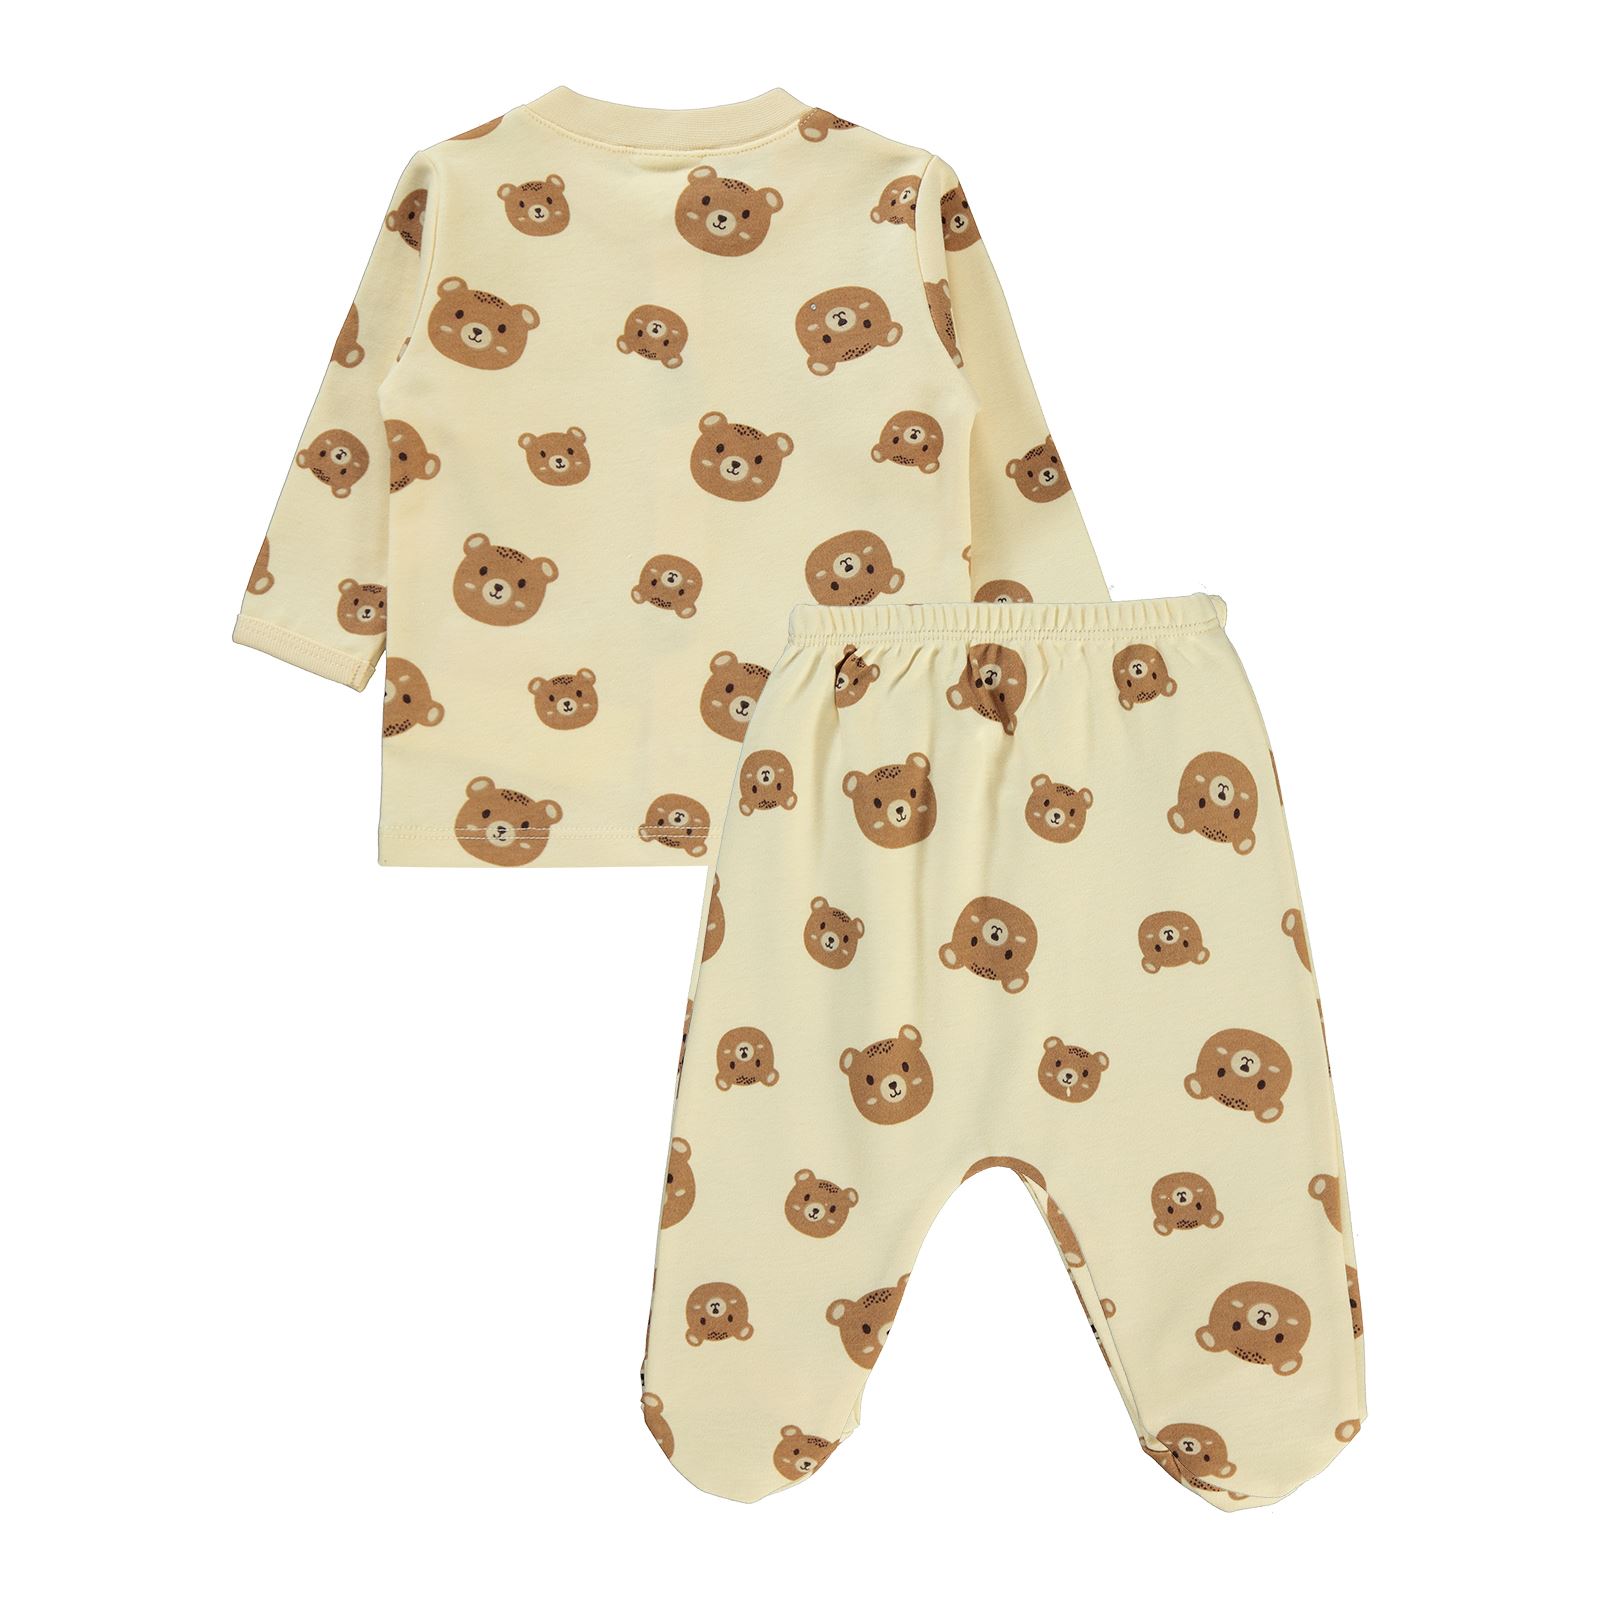 Civil Baby Erkek Bebek Pijama Takımı 1-6 Ay Fil Dişi